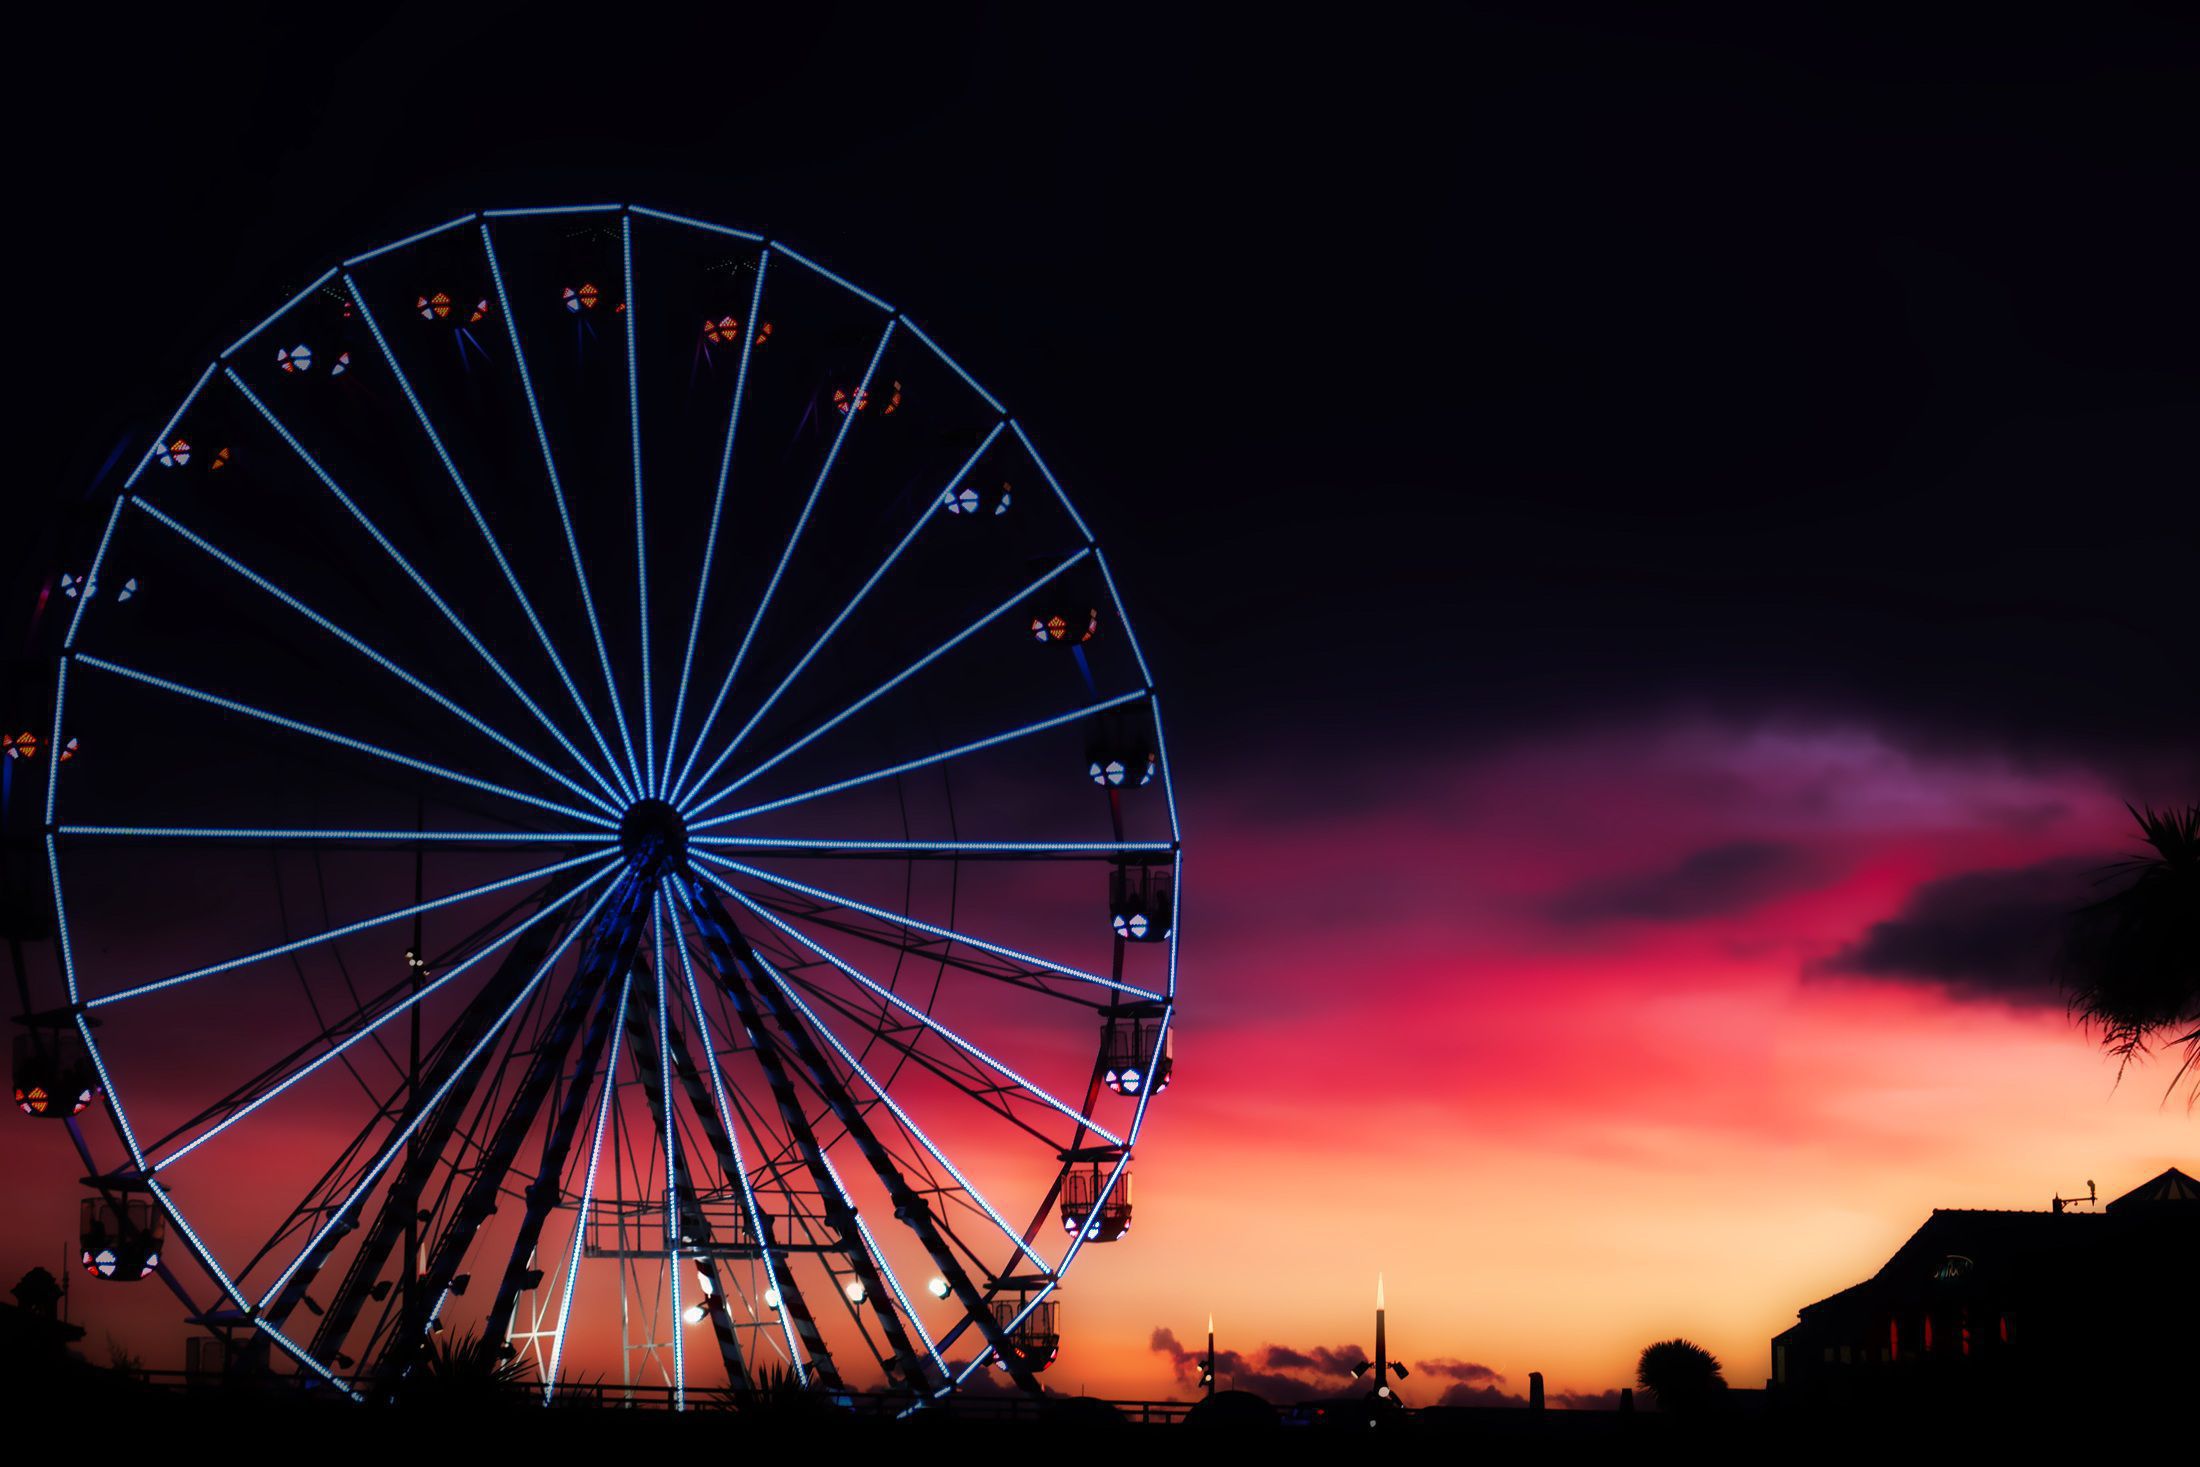 fond d'écran grande roue,grande roue,roue,ciel,attraction touristique,nuit